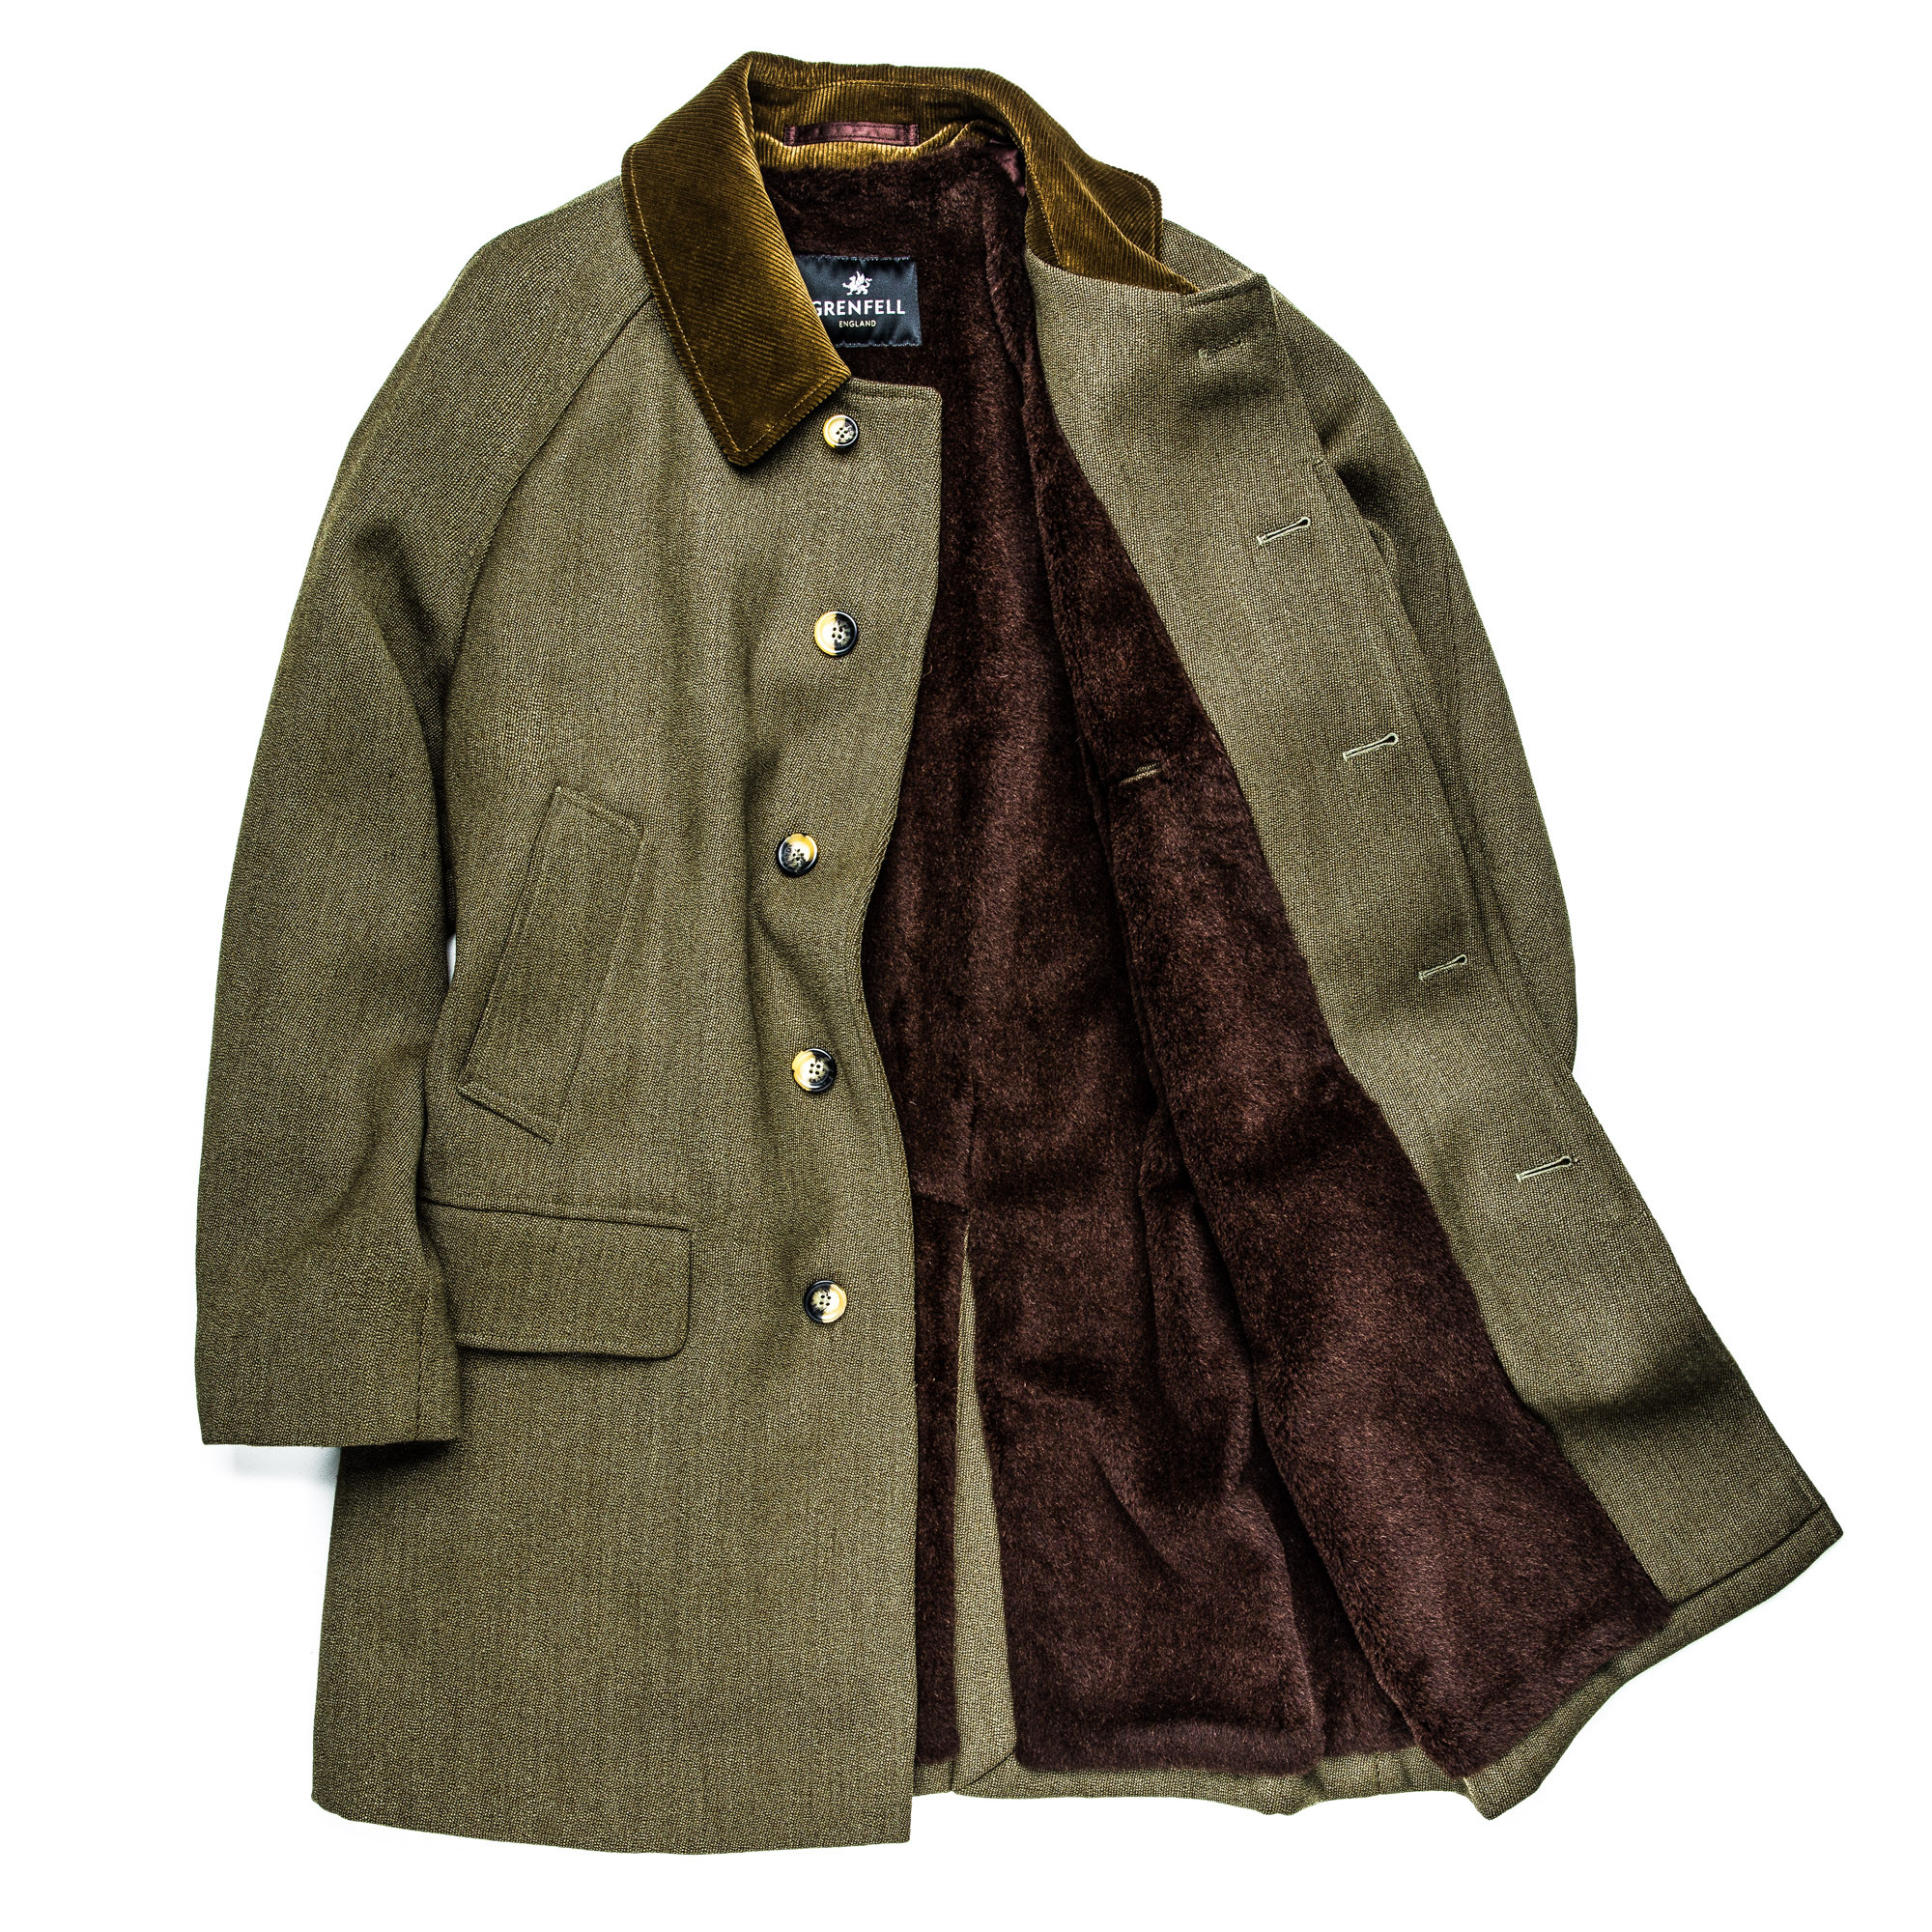 Grenfell - Men's Grampian Coat with Alpaca Lining